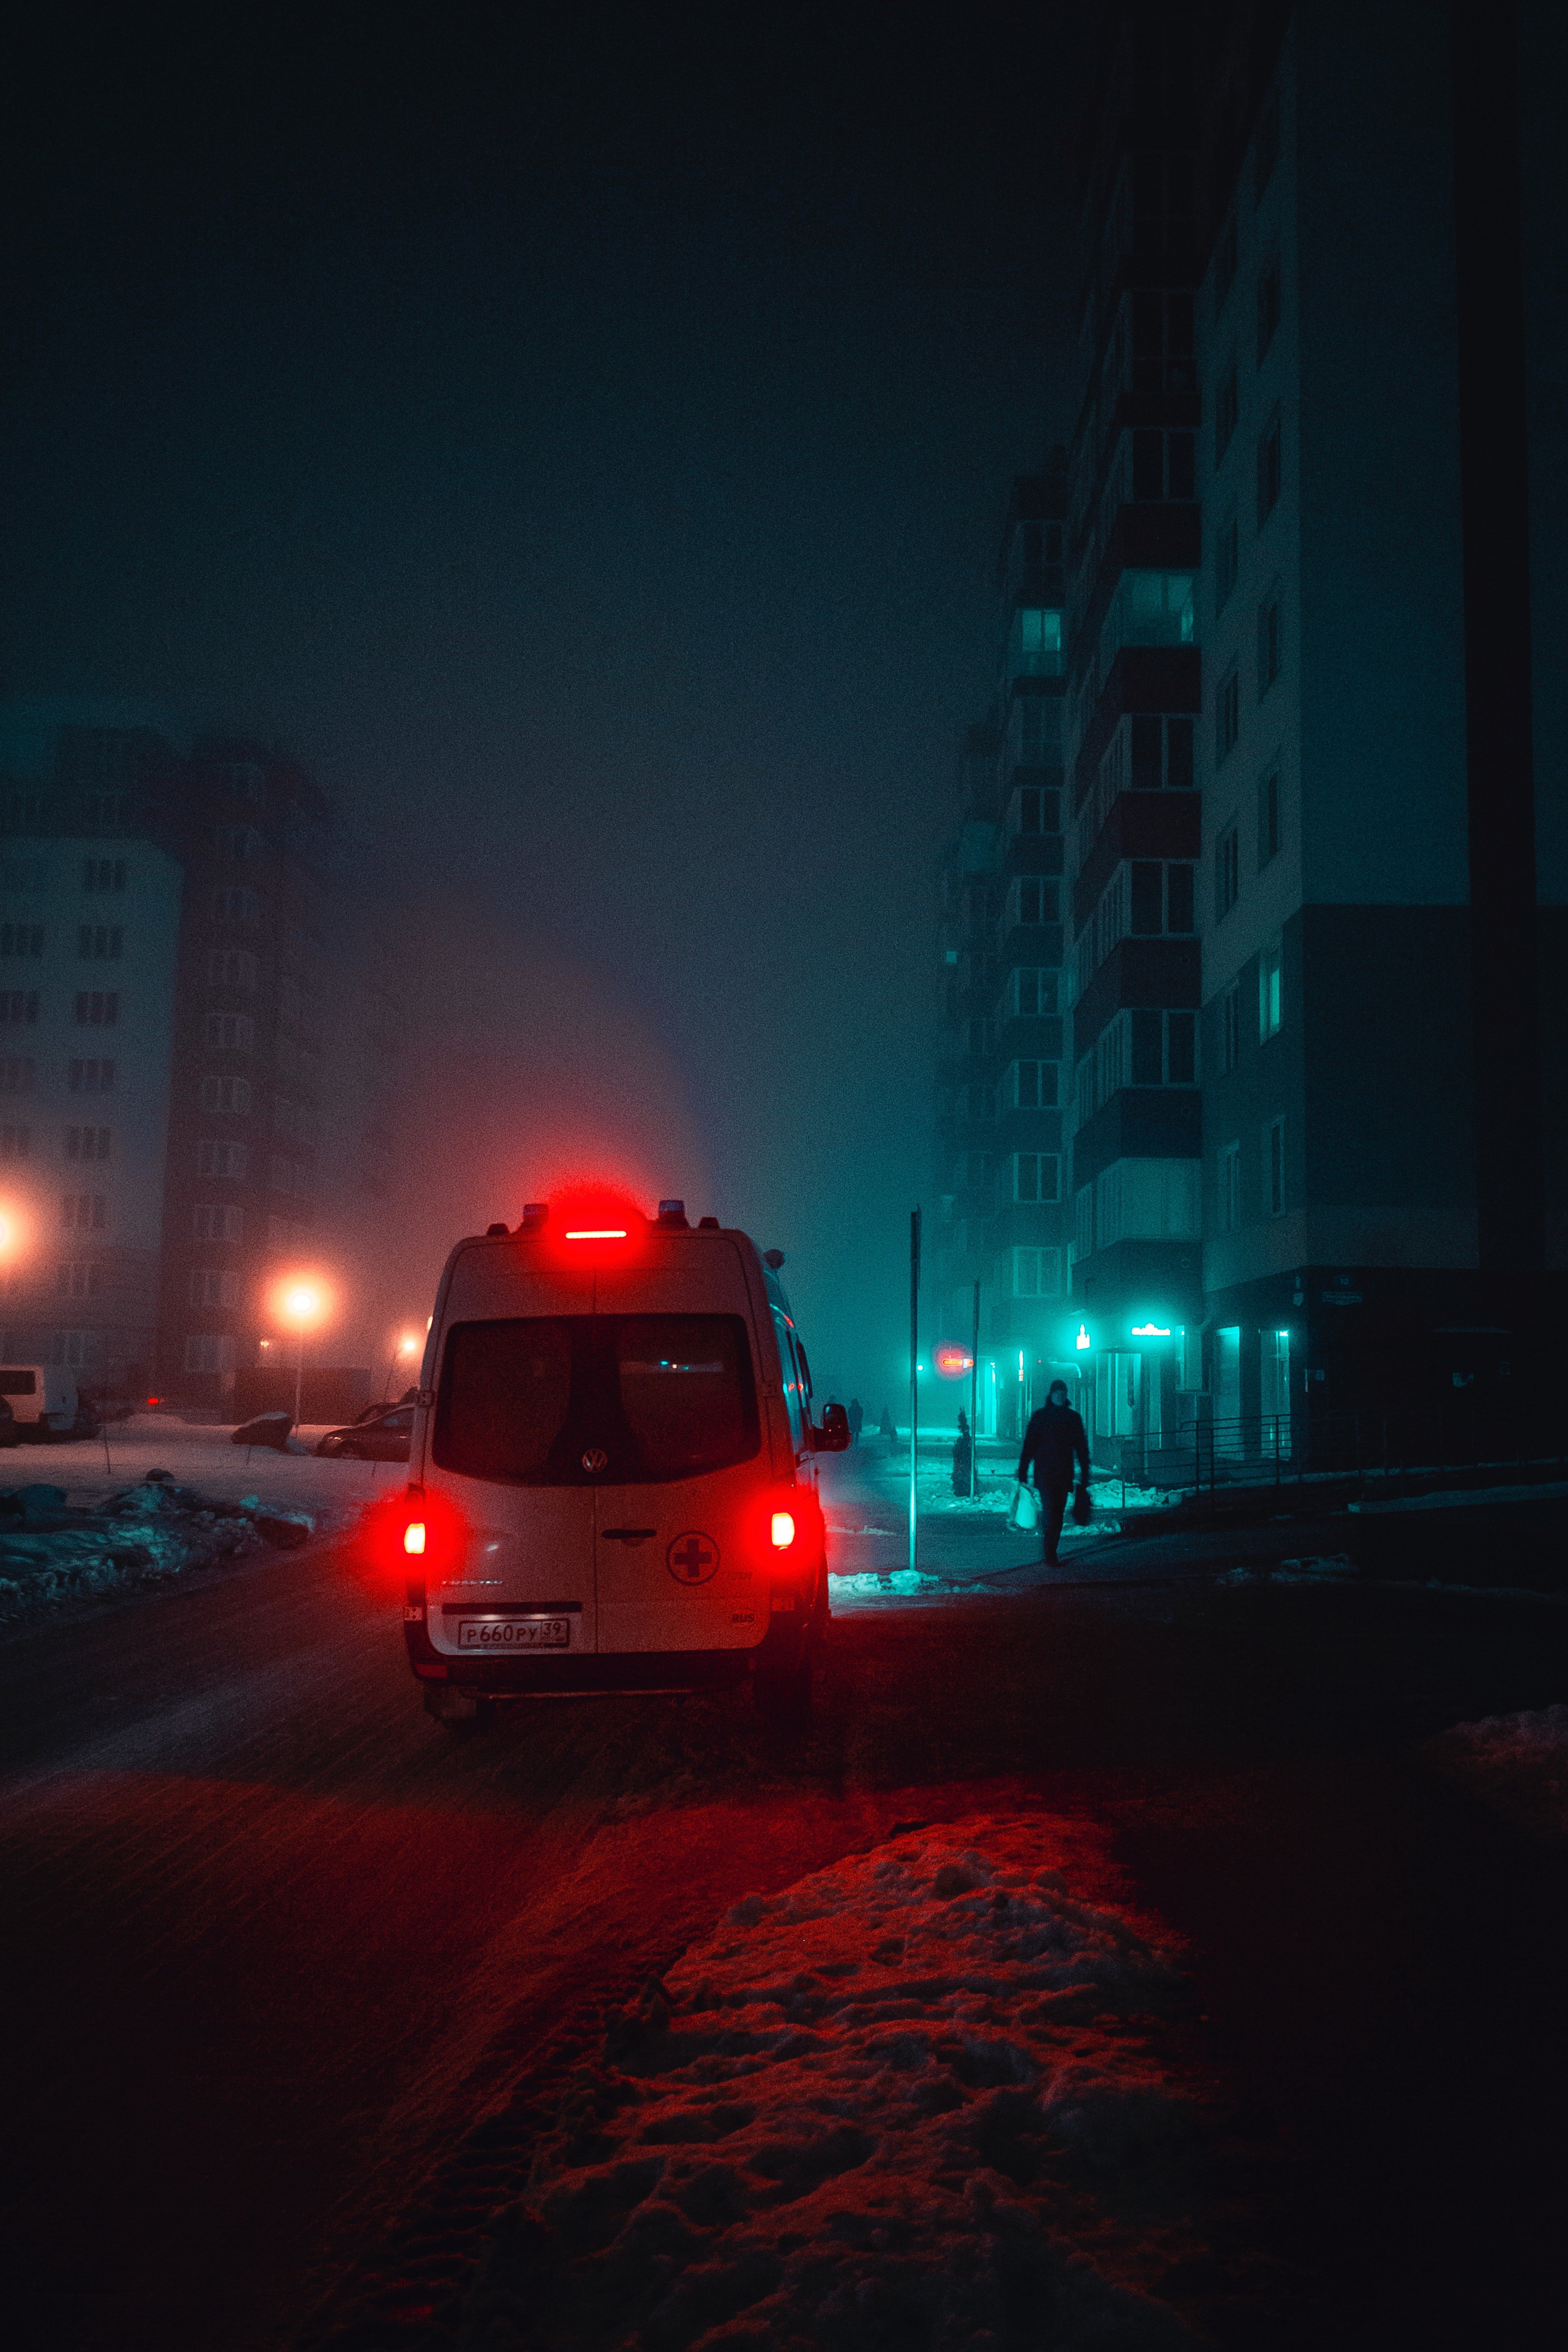 Vista trasera de una ambulancia. | Foto: Pexels